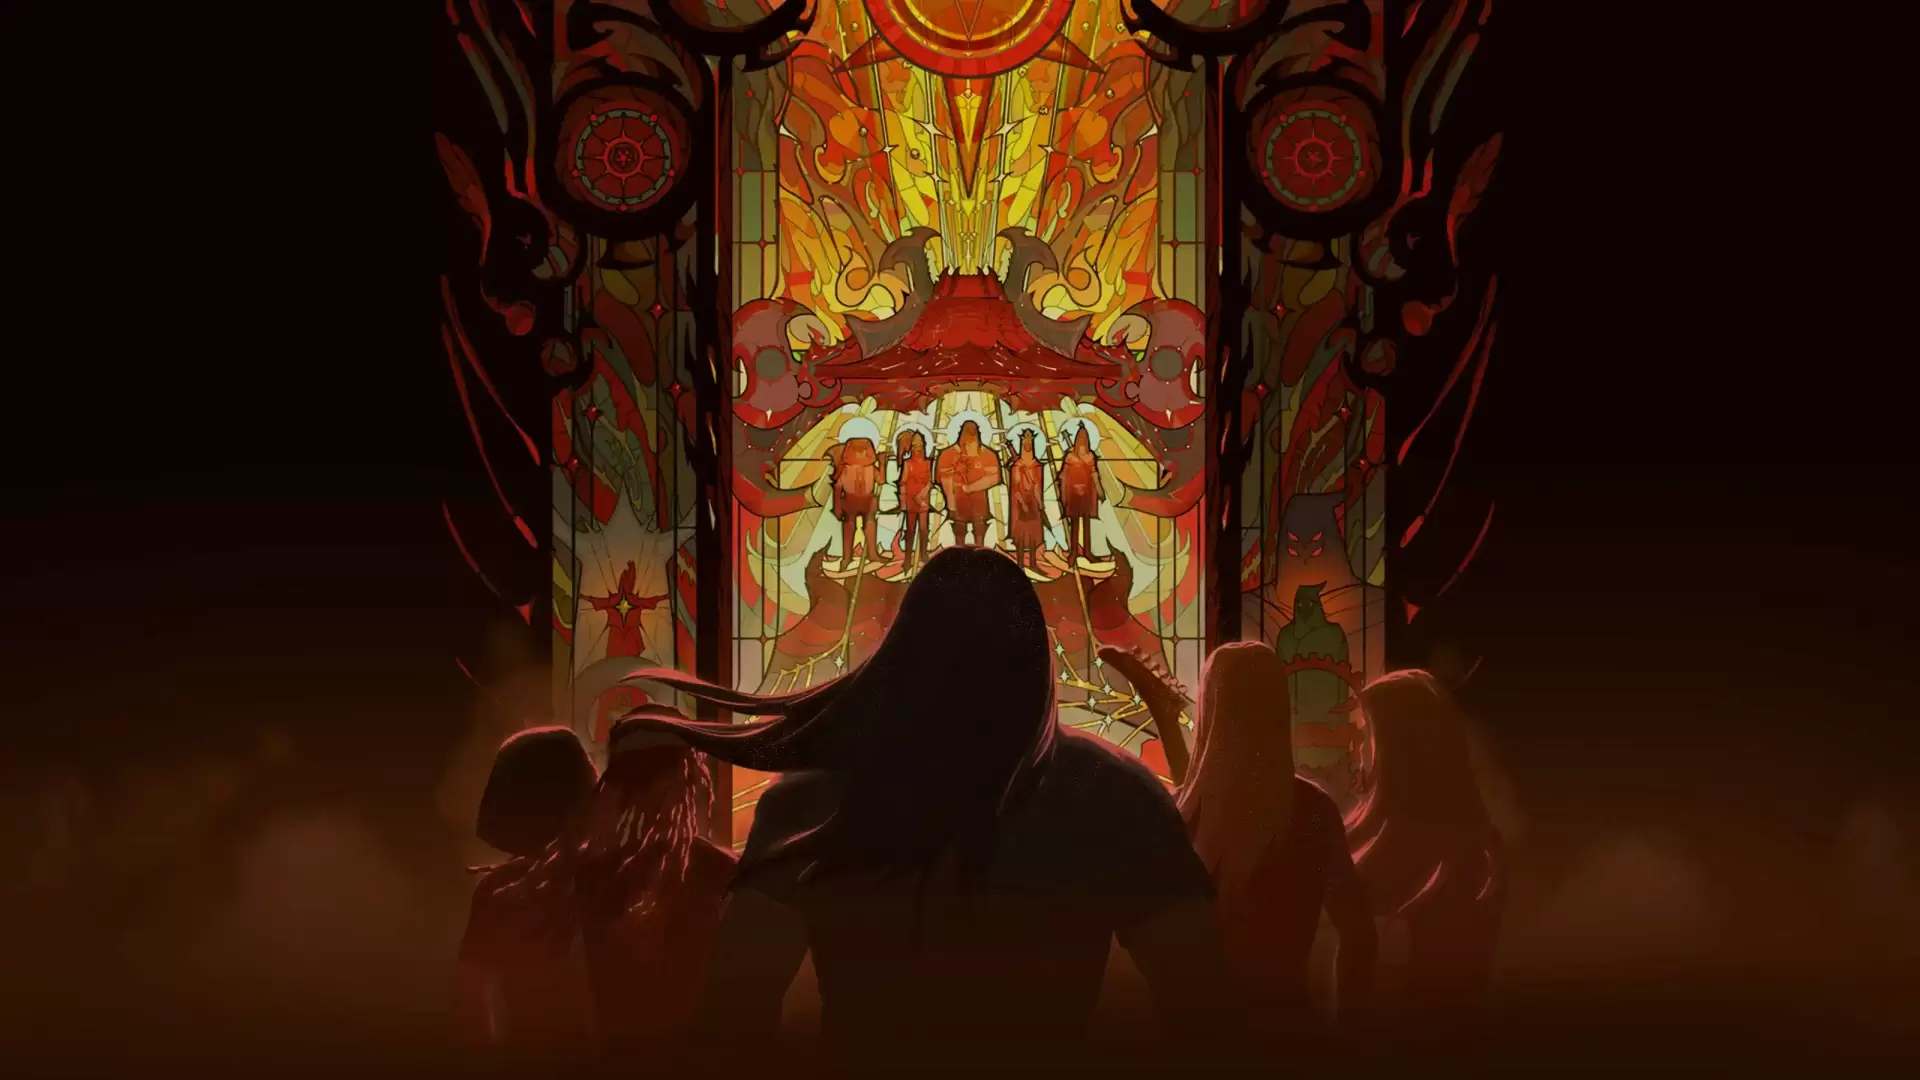 دانلود انیمیشن Metalocalypse: Army of the Doomstar 2023 با زیرنویس فارسی و تماشای آنلاین